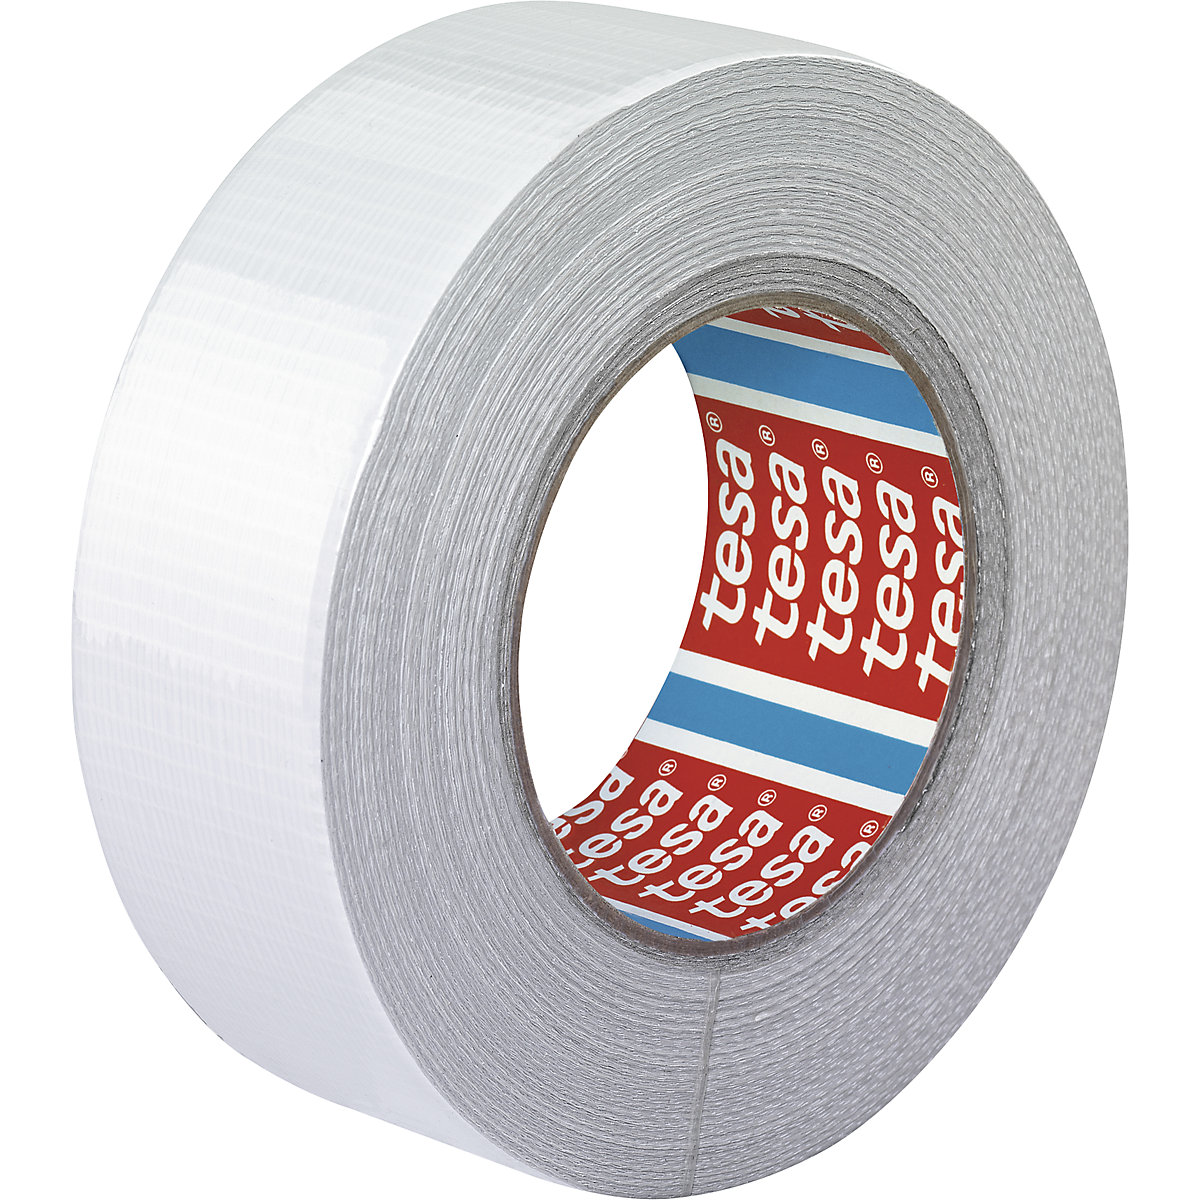 Tkaninová páska – tesa, tkaninová páska tesa® 4662, bal.j. 24 rolí, bílá, šířka pásky 48 mm-1